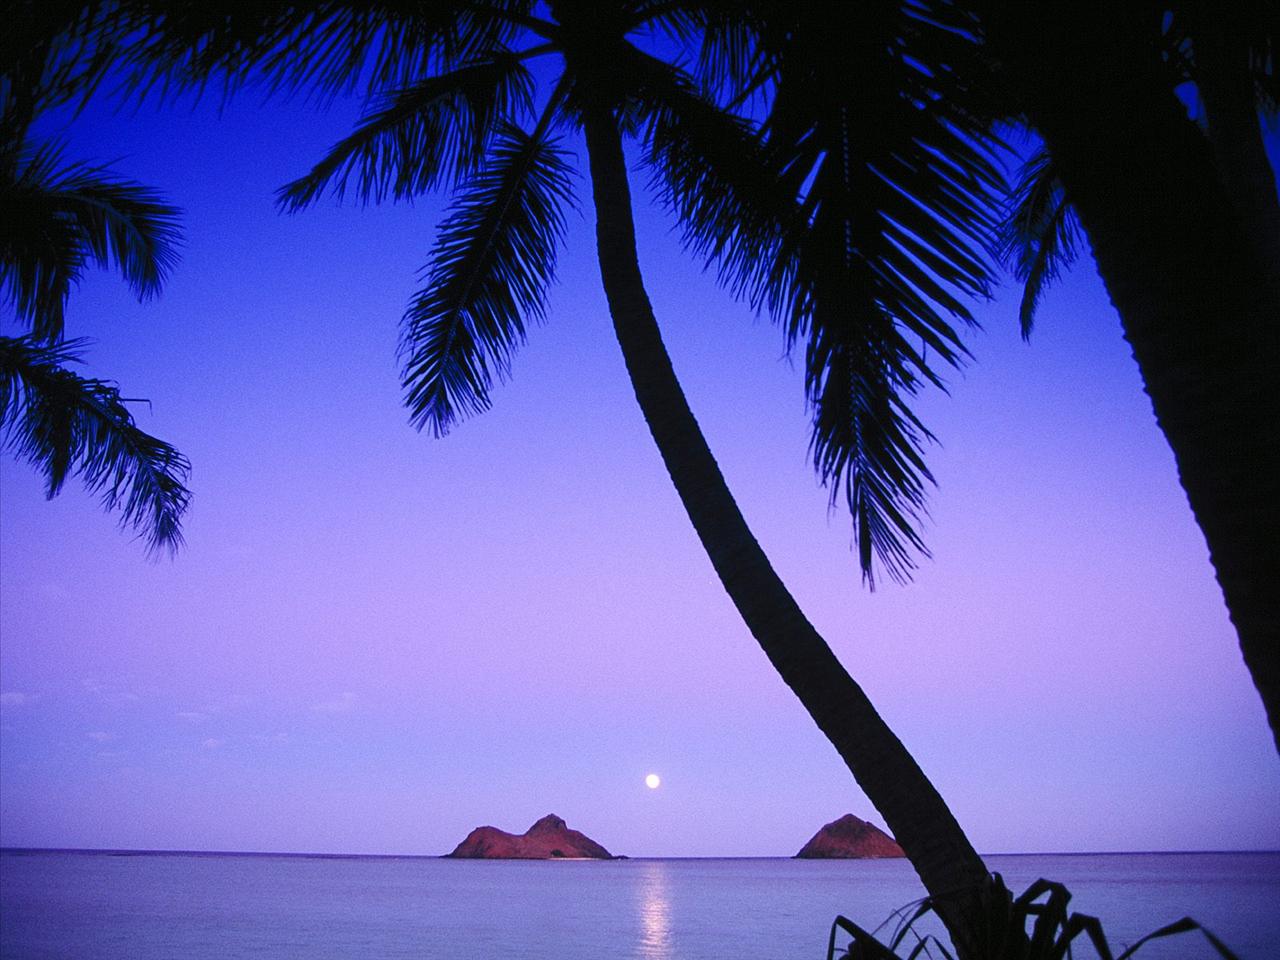 HAWAJE - Mokulua Islands, Lanikai Beach, Oahu, Hawaii.jpg